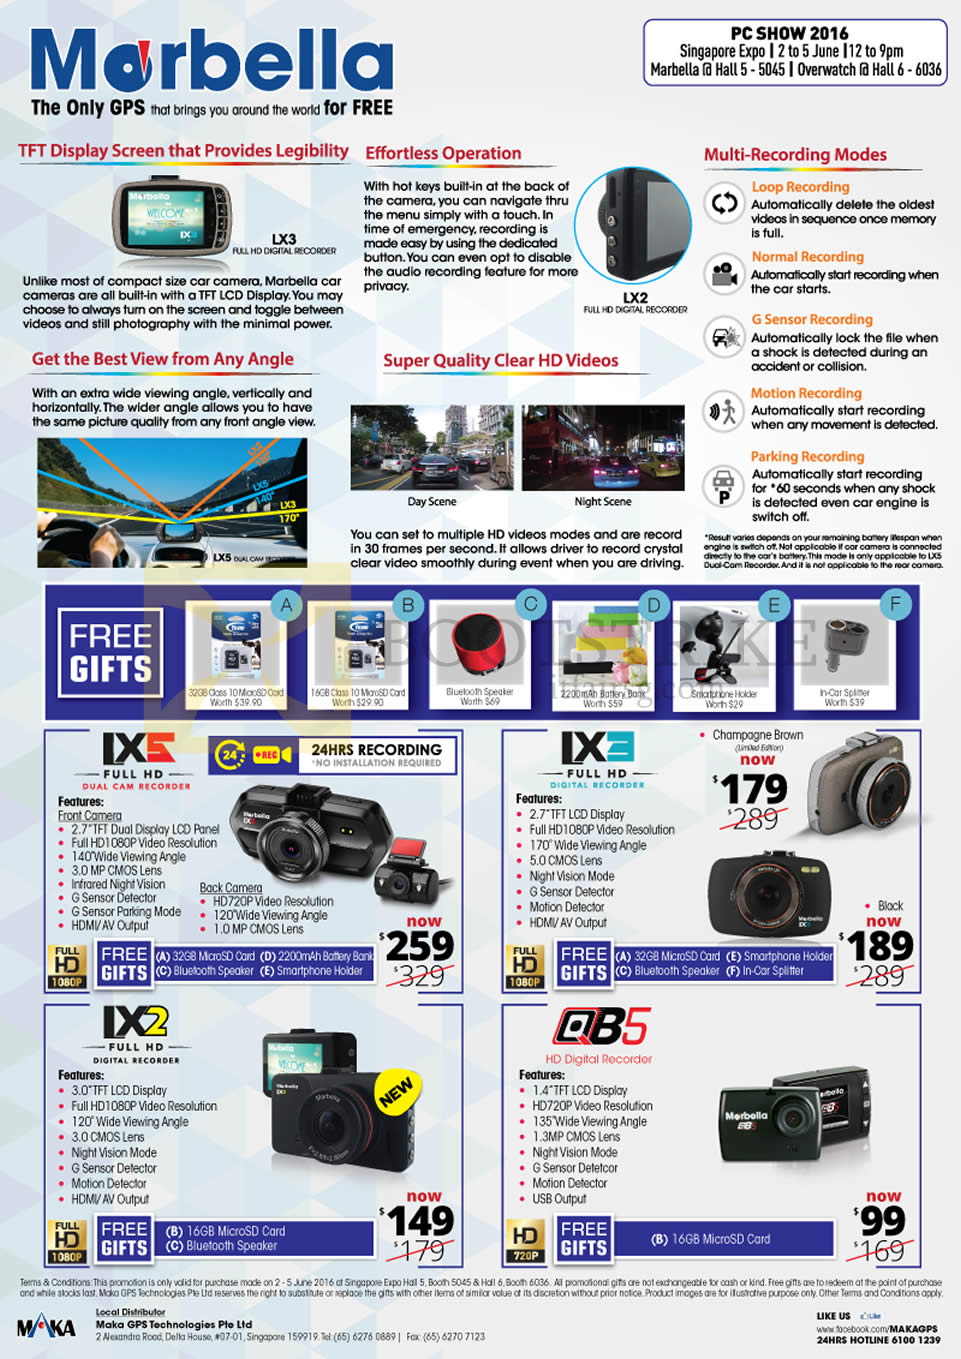 PC SHOW 2016 price list image brochure of Maka GPS Marbella Car Digital Recorders LX5, LX3 LX2, QB5